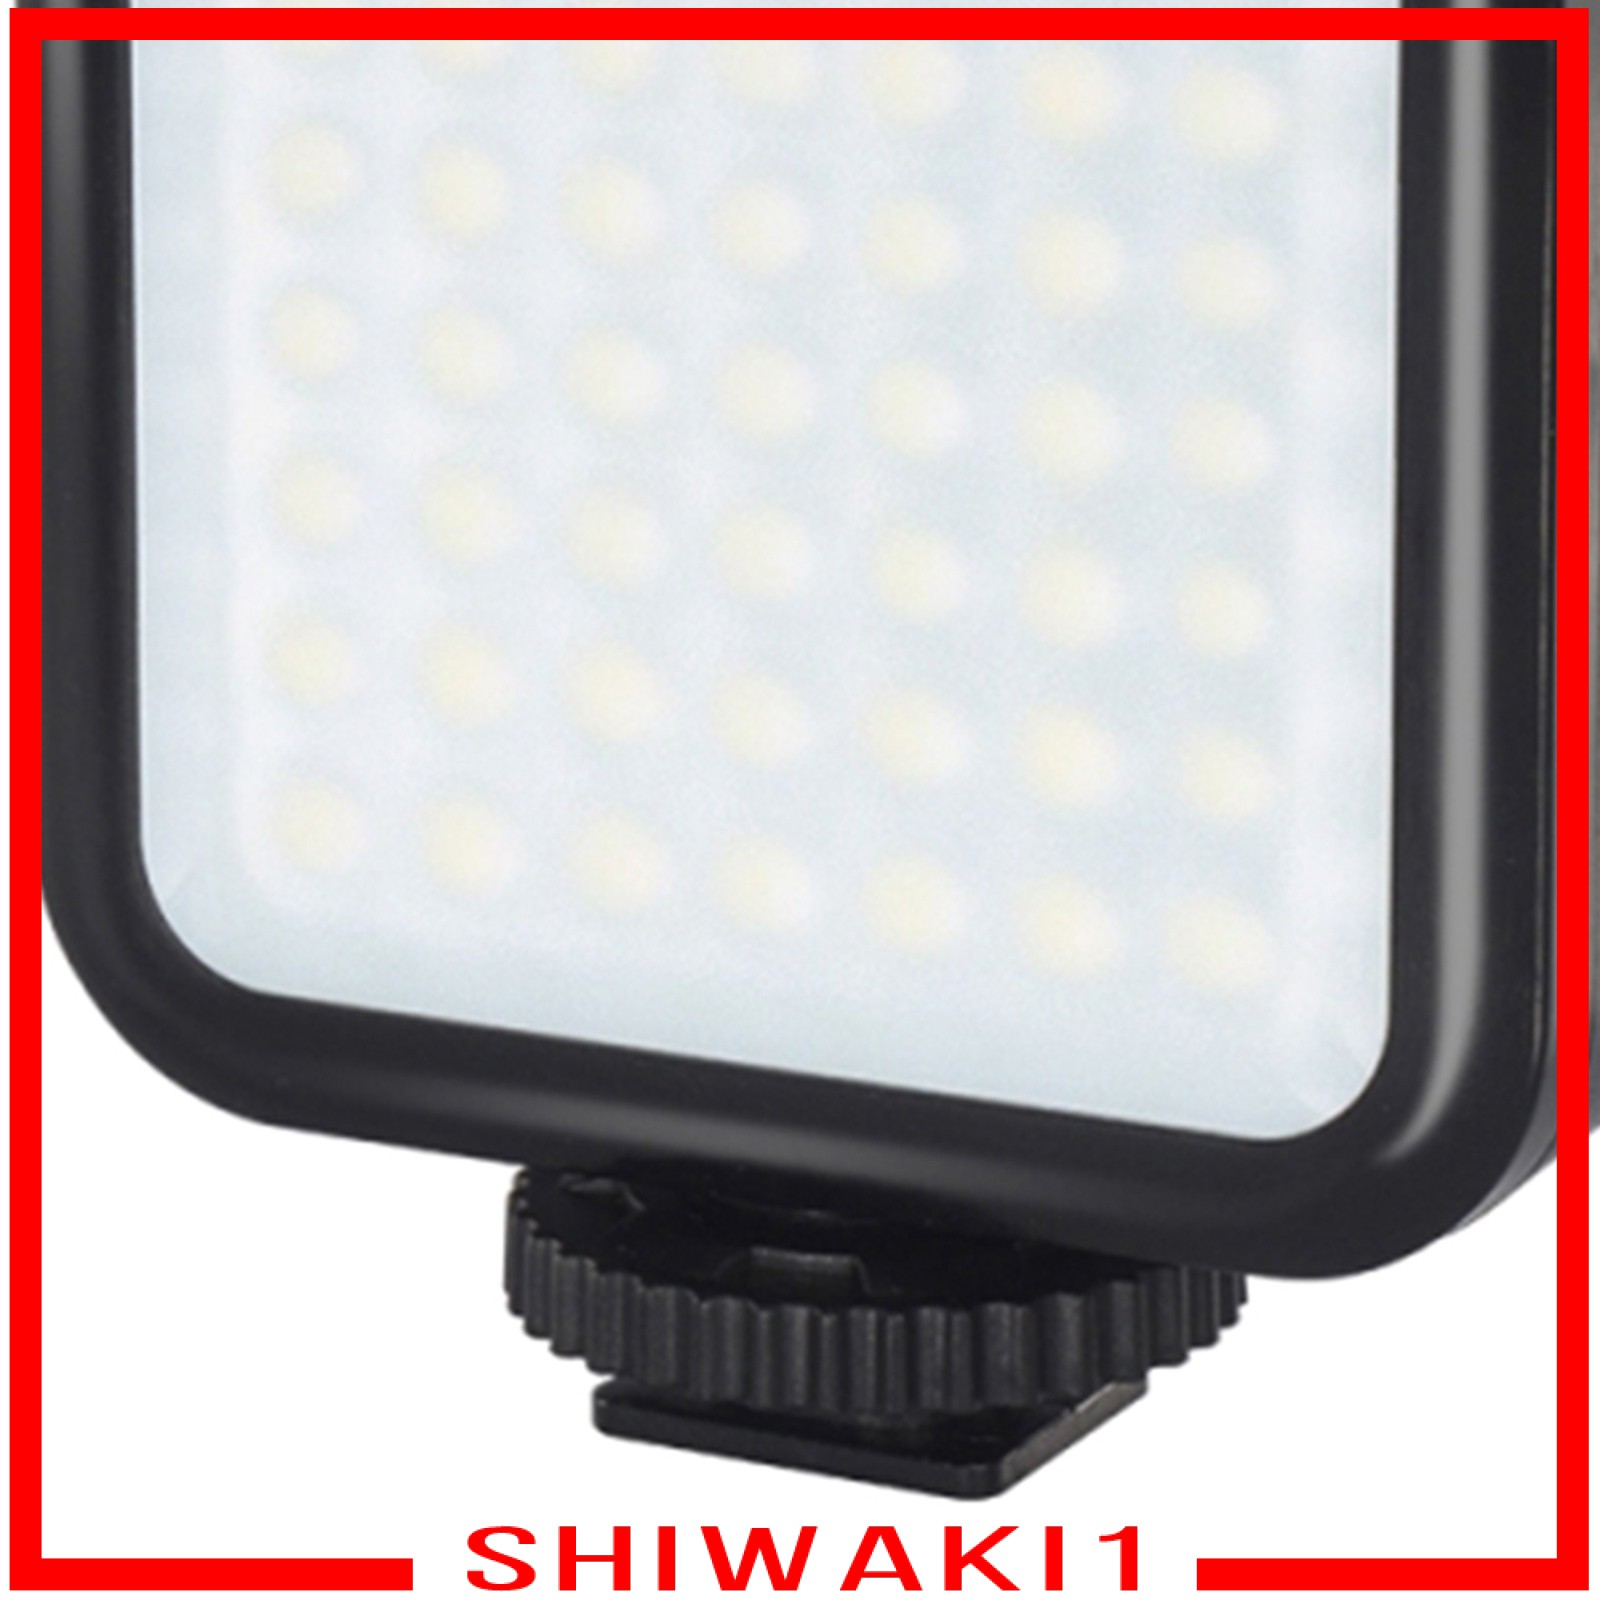 Đèn Led Chiếu Sáng Chụp Ảnh Chuyên Nghiệp Shiwaki1